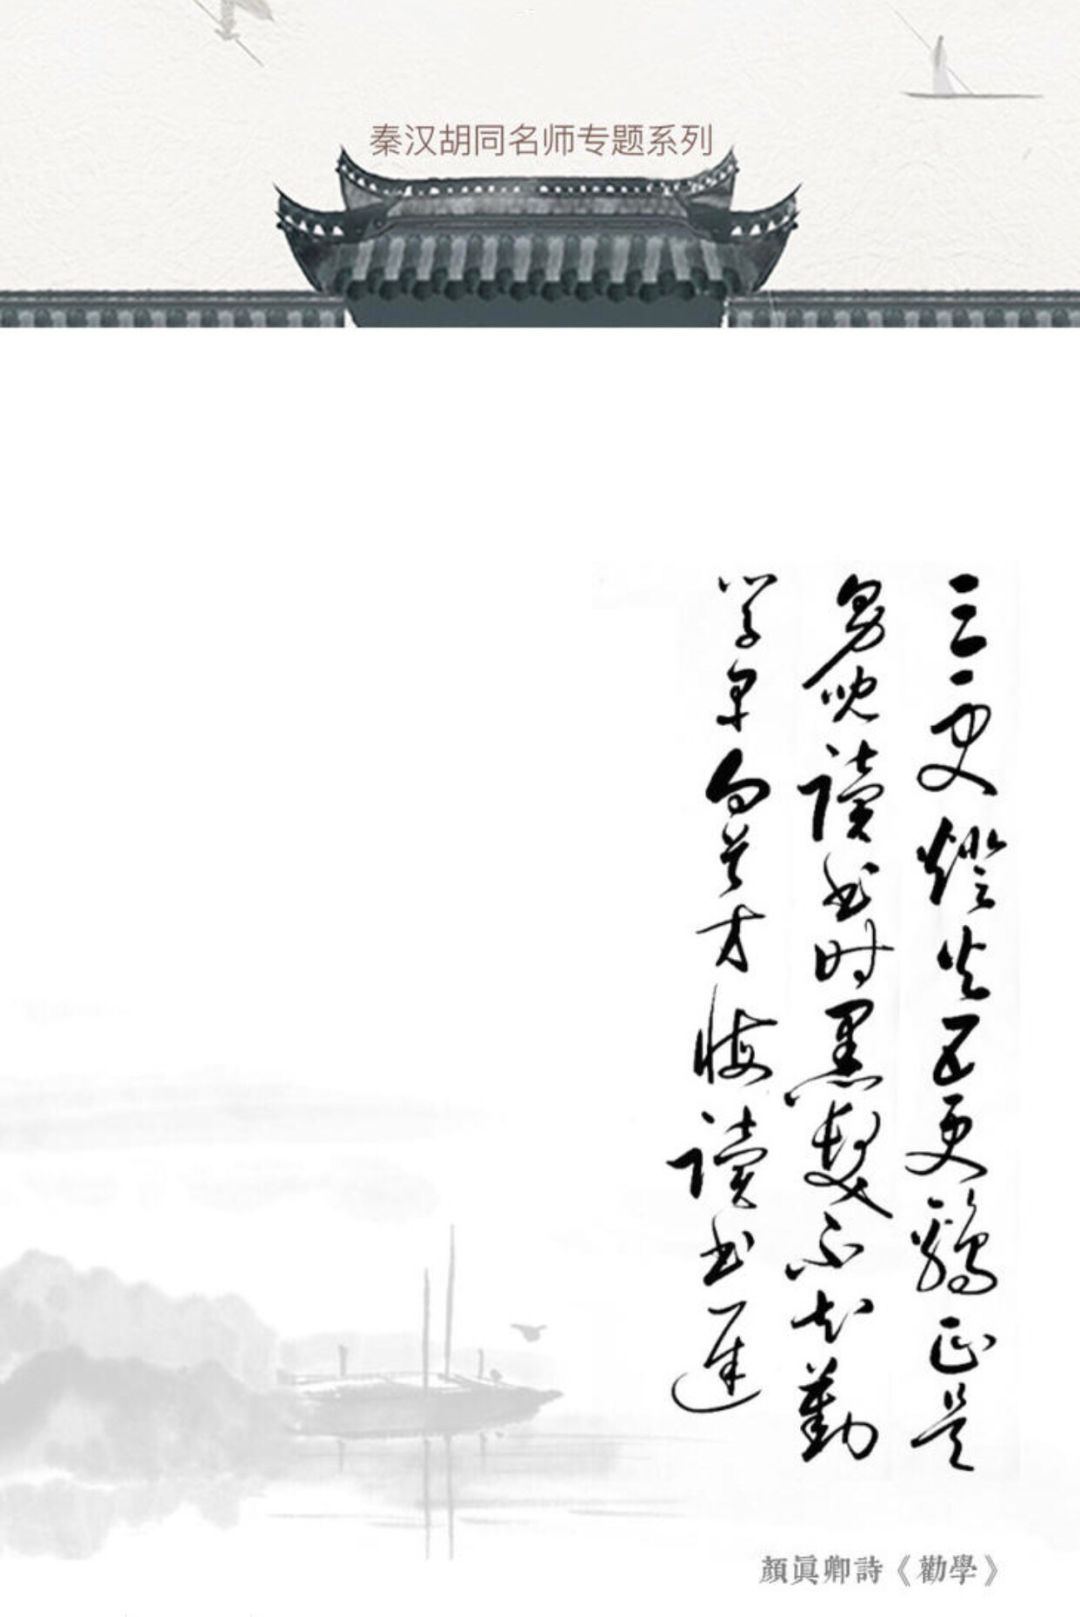 是他的一笔一划，影响了1000年来中国人书写汉字的方式